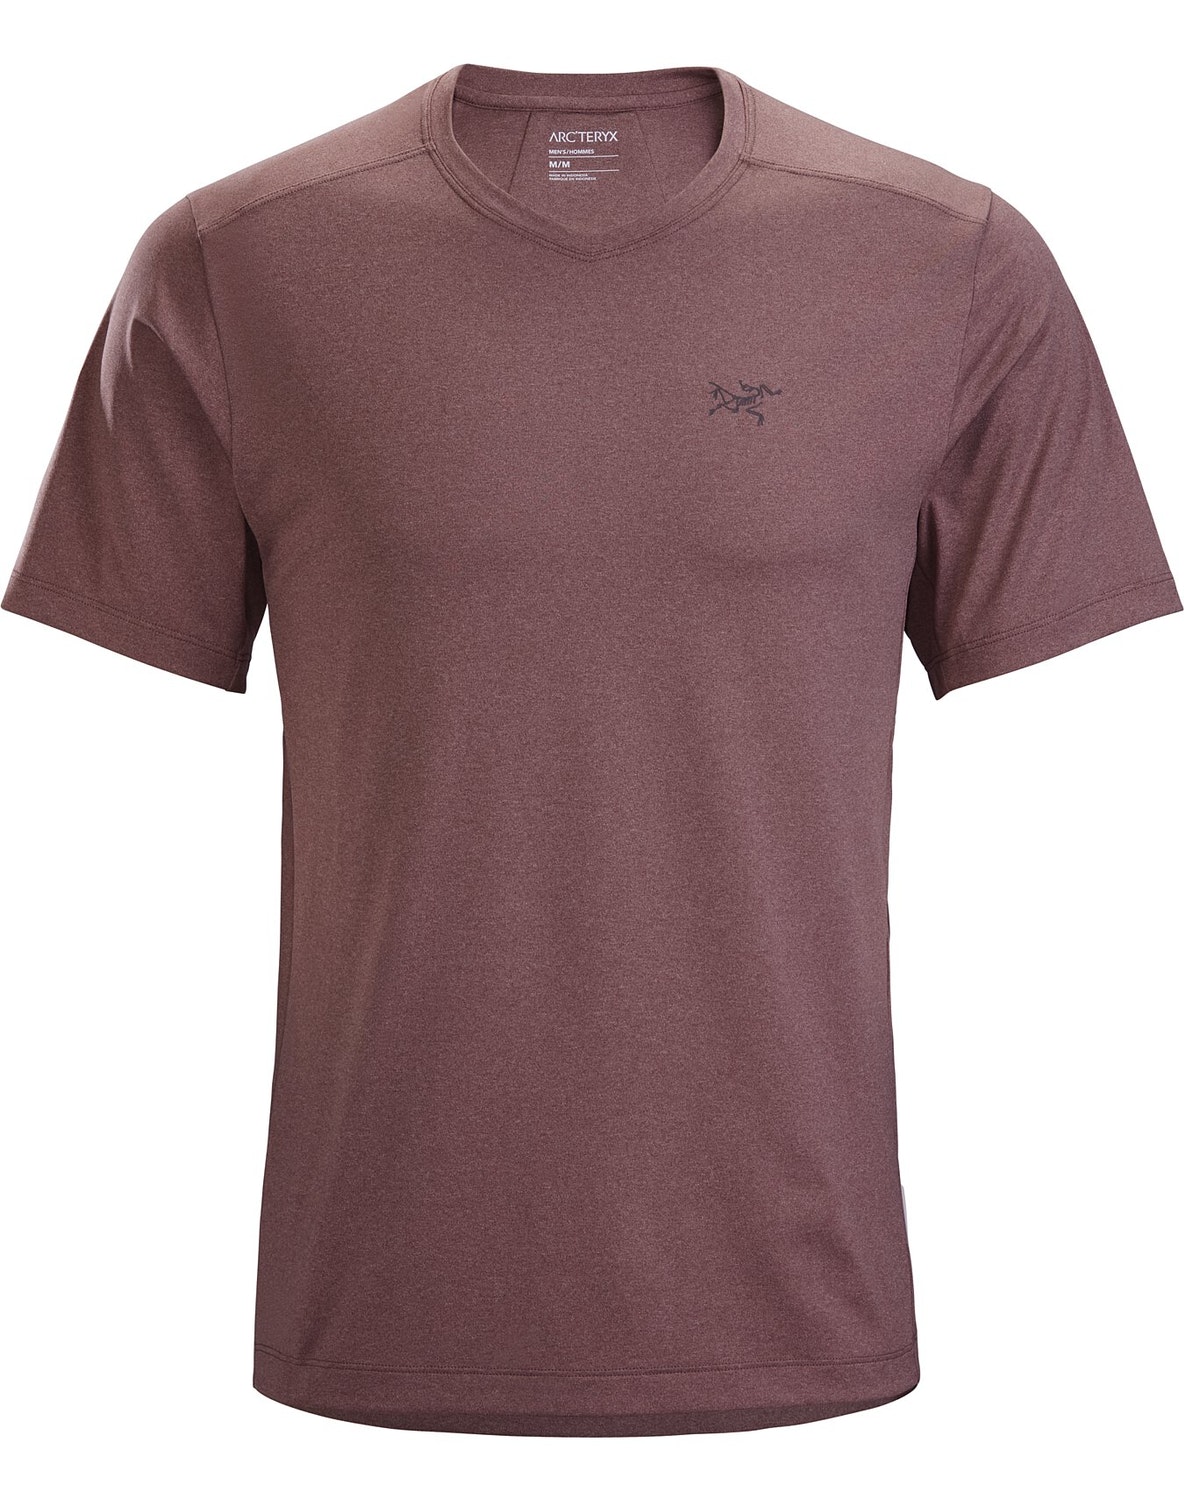 T-shirt Arc'teryx Remige Uomo Bordeaux - IT-14343659